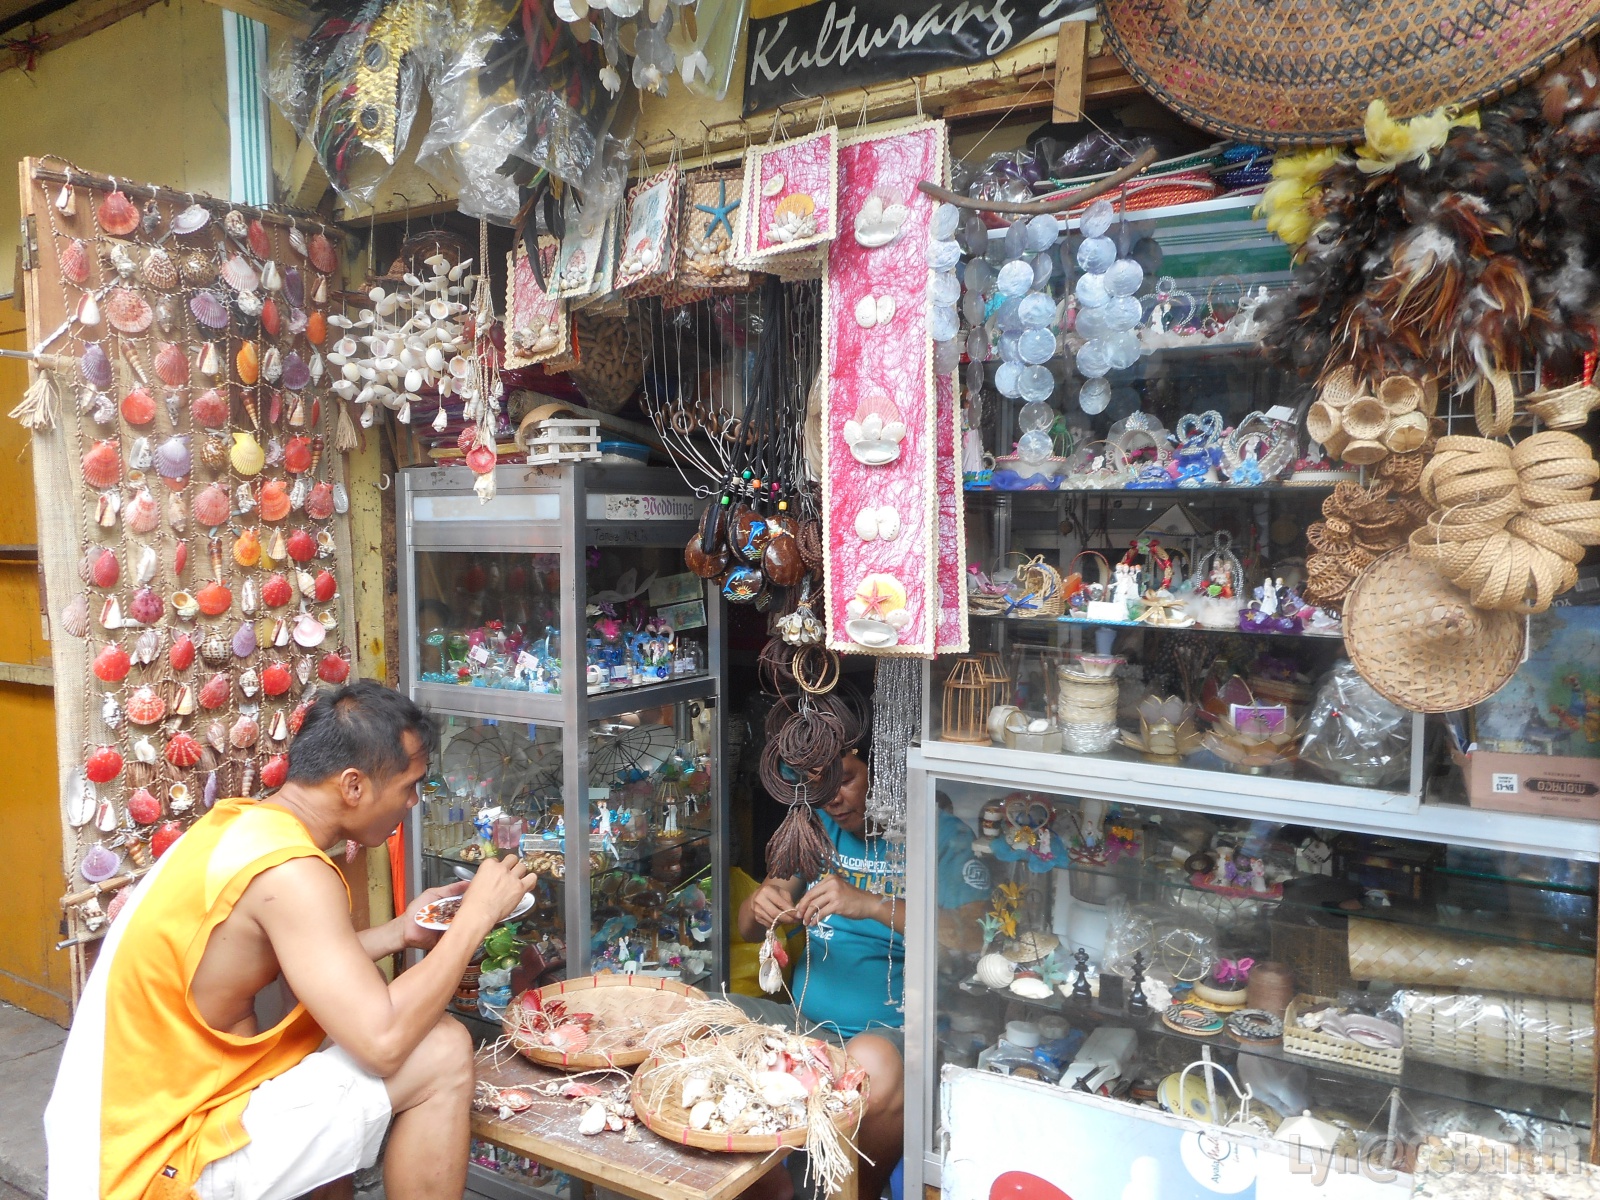 A souvenir shop.